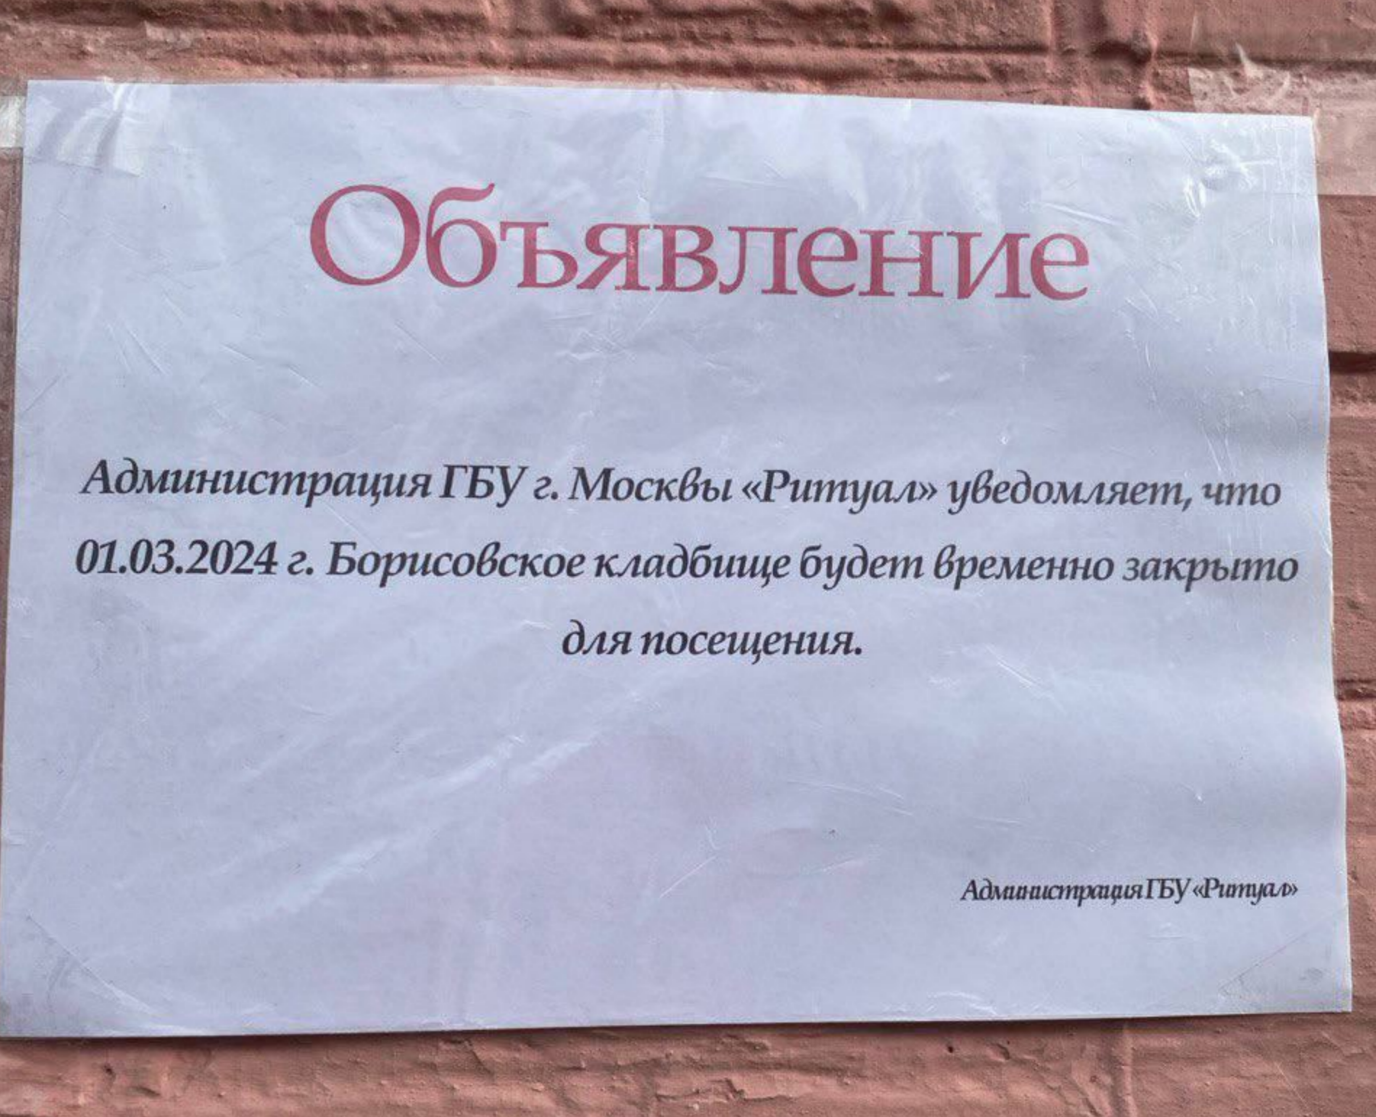 Объявление на стенах храма, где должно пройти отпевание Алексея Навального, фото SotaVision.